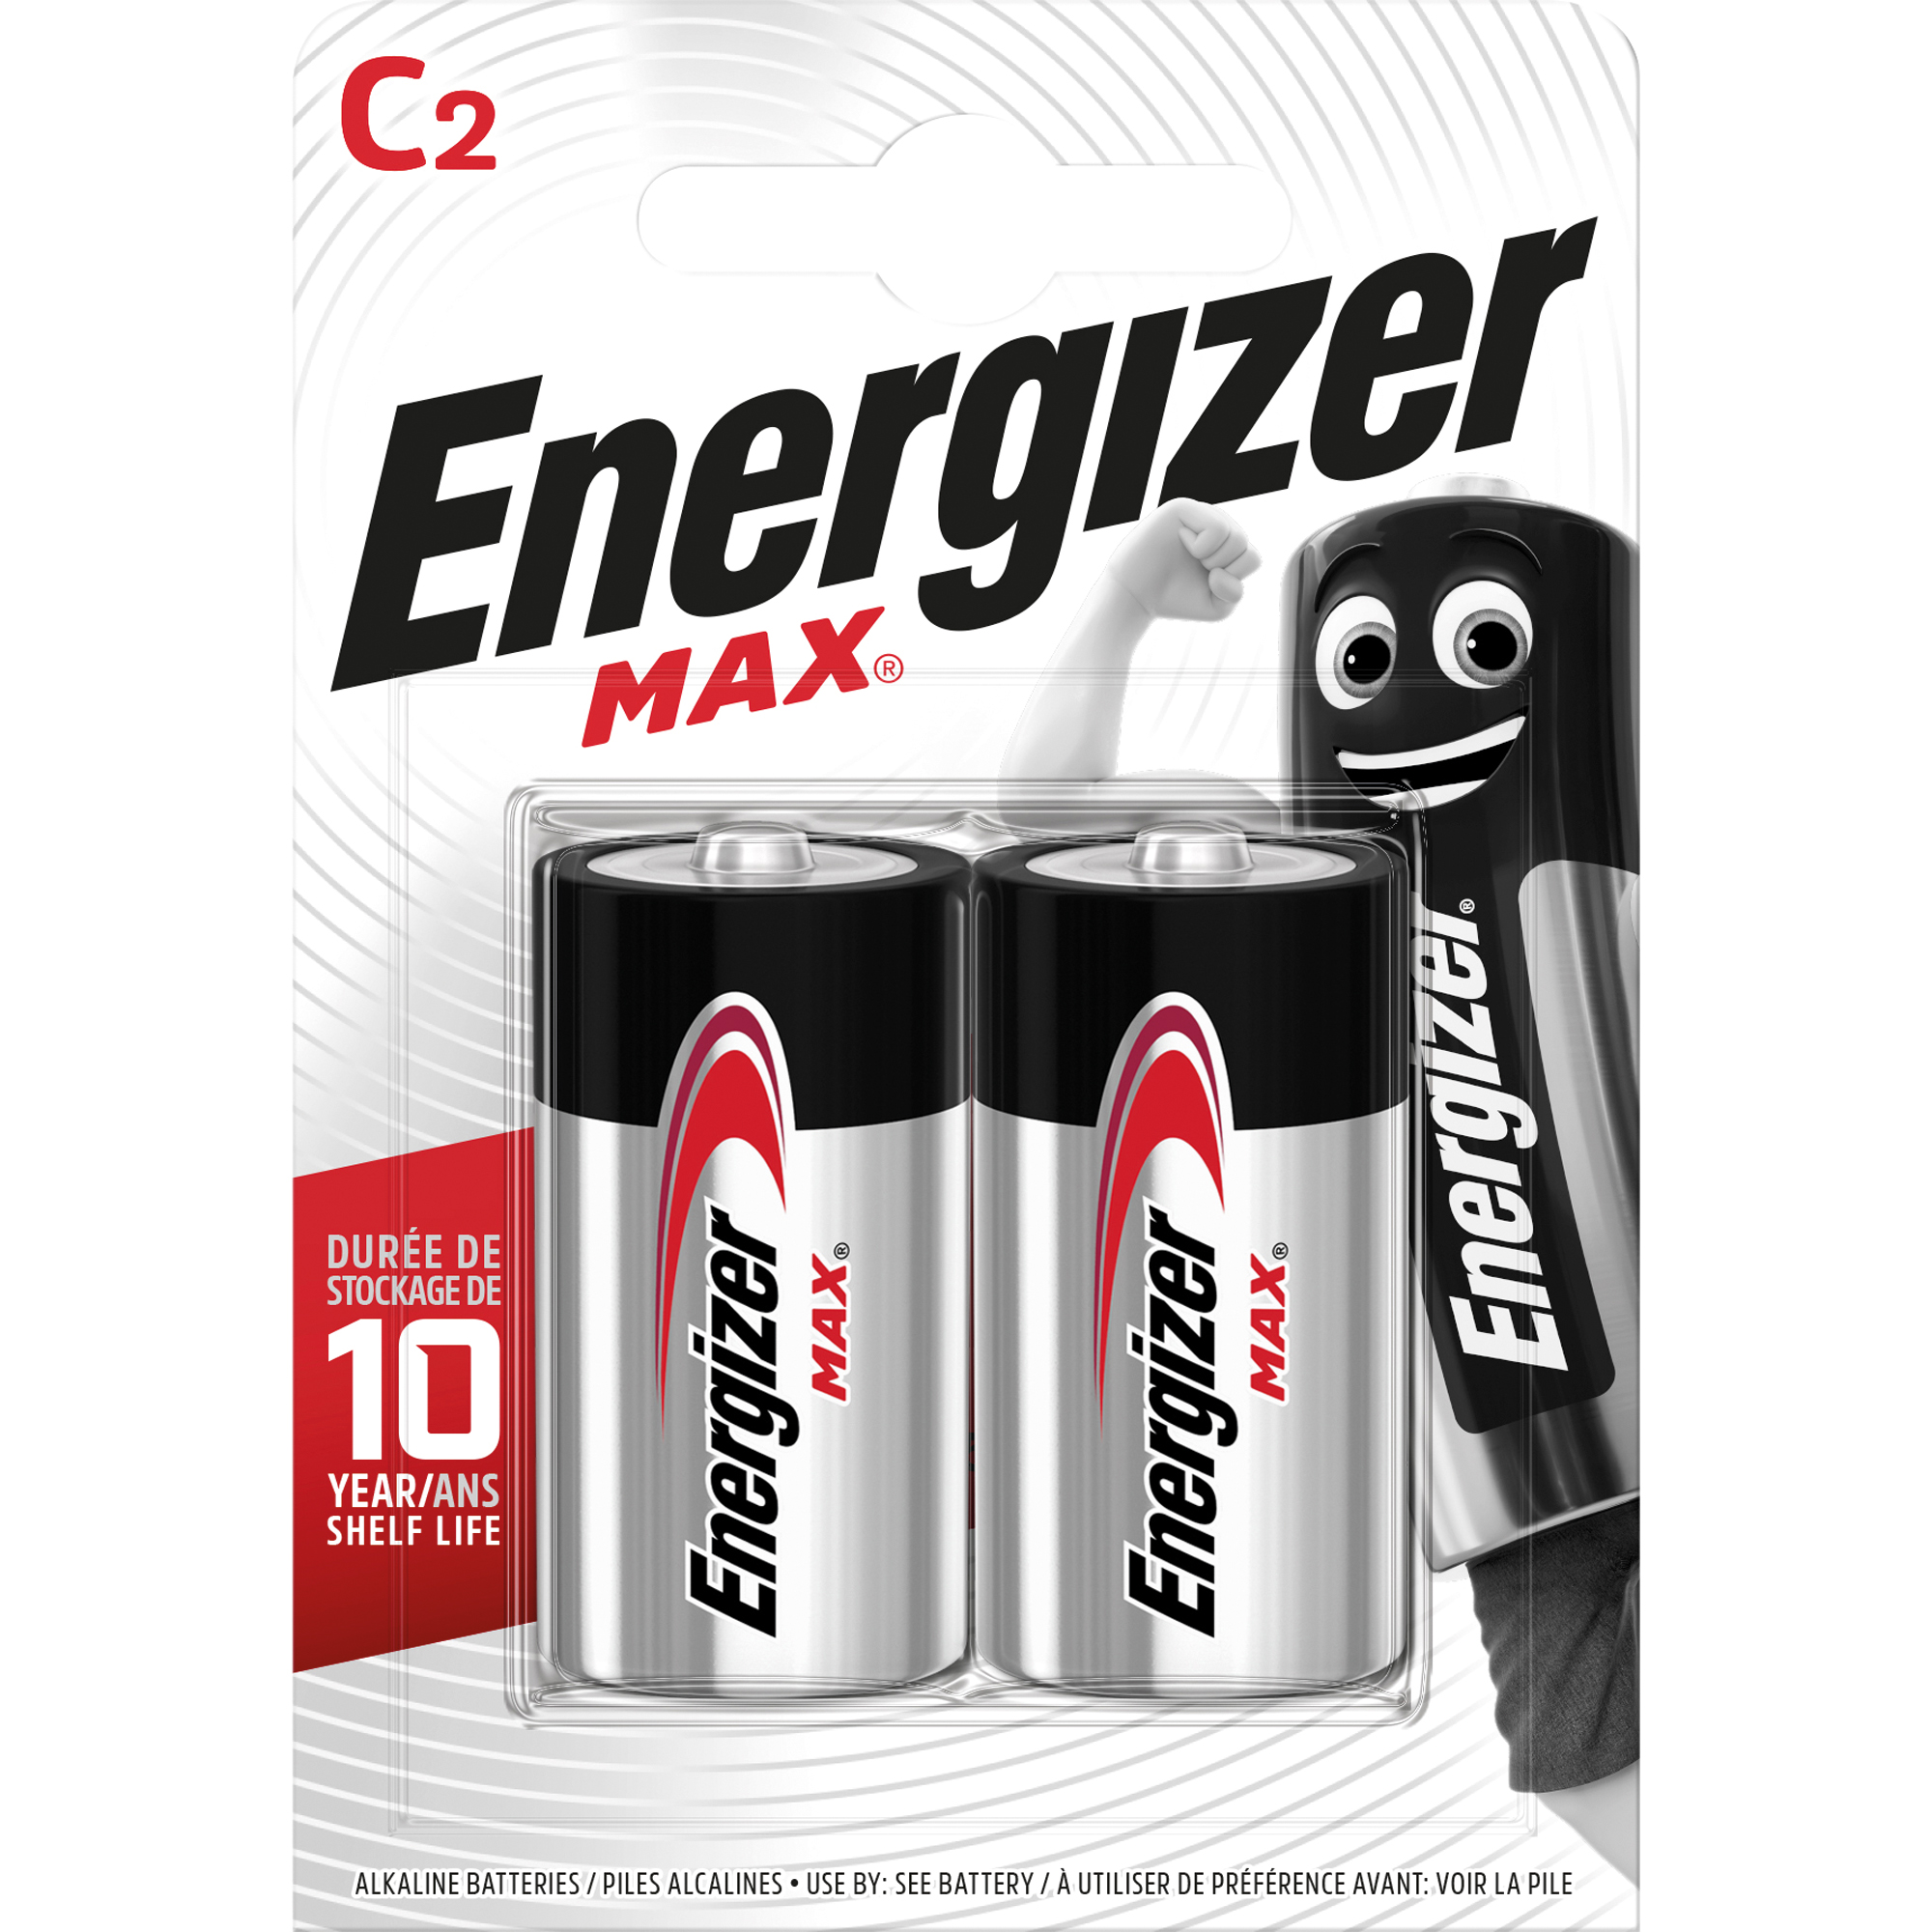 Energizer Batterie Max Alkaline E302306700 CBabyLR14 2 St.Pack.